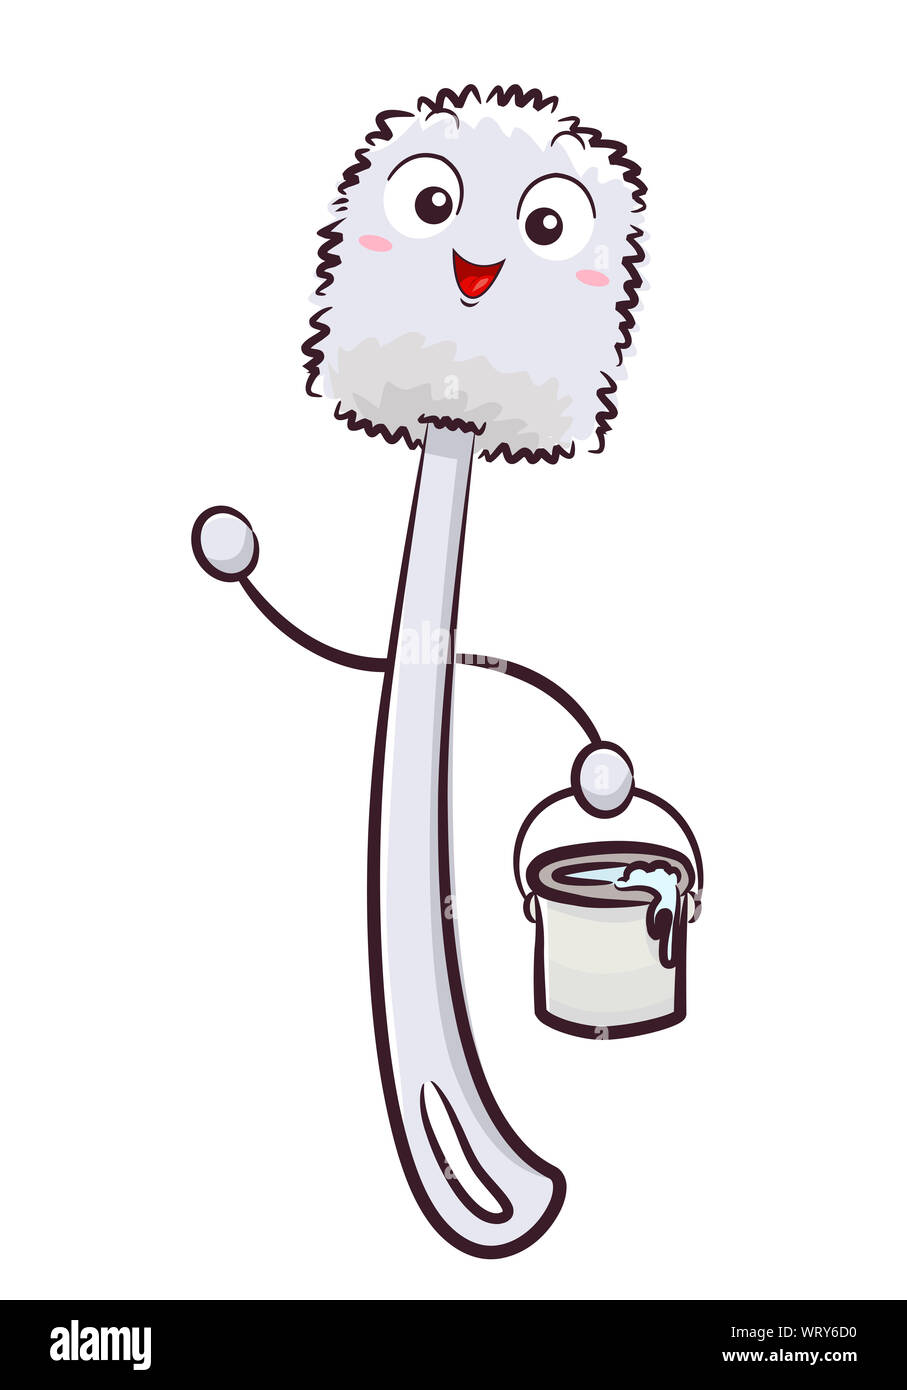 Illustration d'une brosse wc Mascot tenant un seau d'eau Photo Stock - Alamy